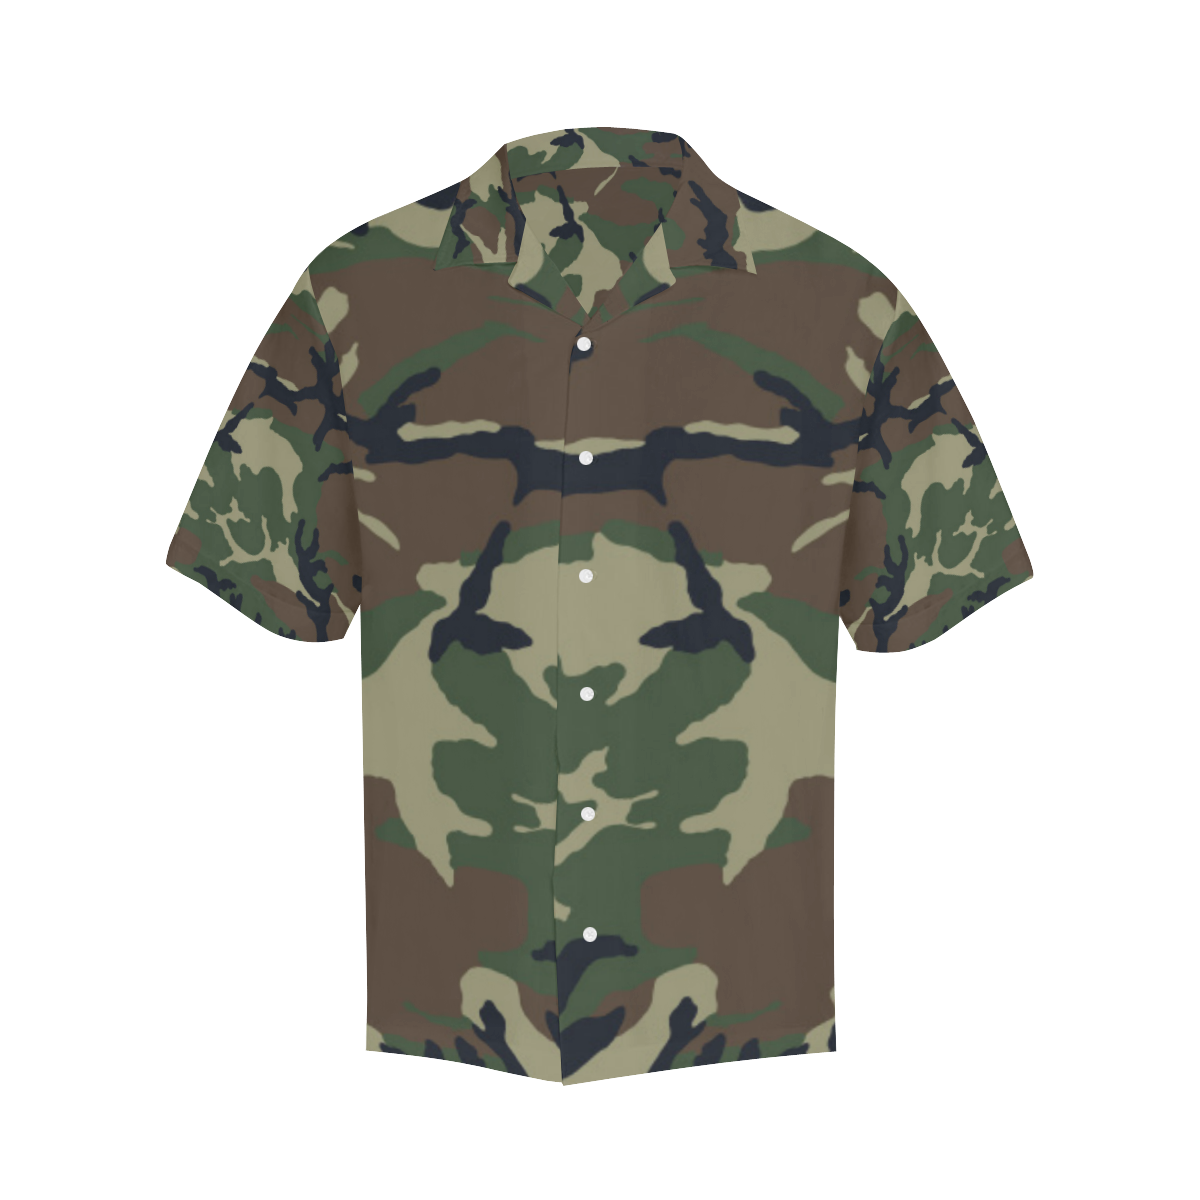 CAMOUFLAGE-WOODLAND 4 Hawaiian Shirt (Model T58)